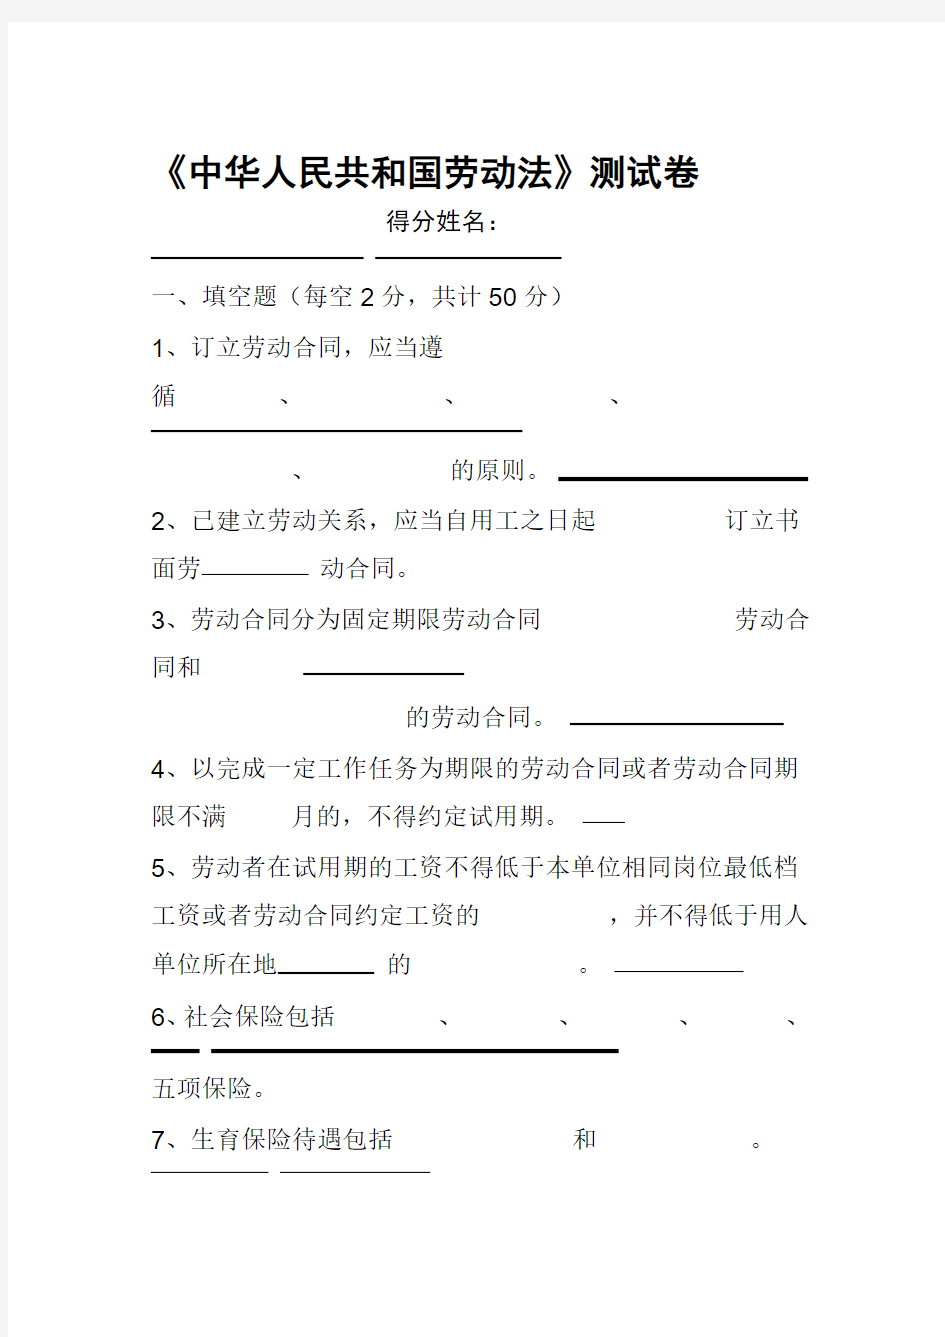 普法试卷之中华人民共和国劳动法试题及答案